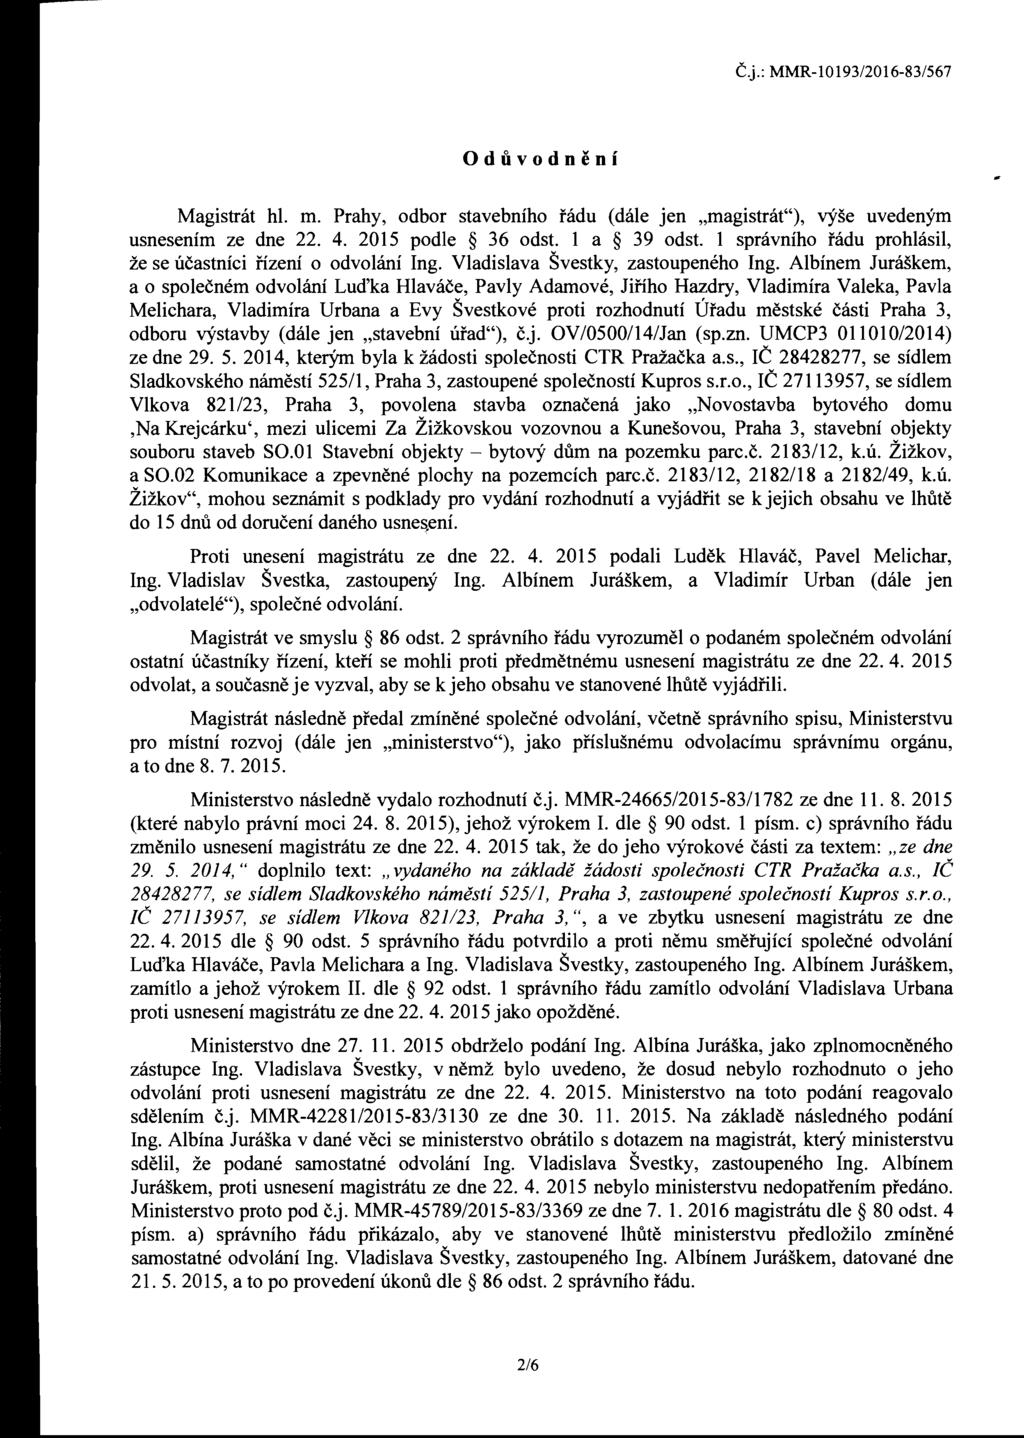 C.j.: MMR-10193/2016-83/567 Oduvodneni Magistnit hi. m. Prahy, odbor stavebniho radu (dale jen "magistrat"), vyse uvedenym usnesenim ze dne 22. 4. 2015 podle 36 odst. 1 a 39 odst.